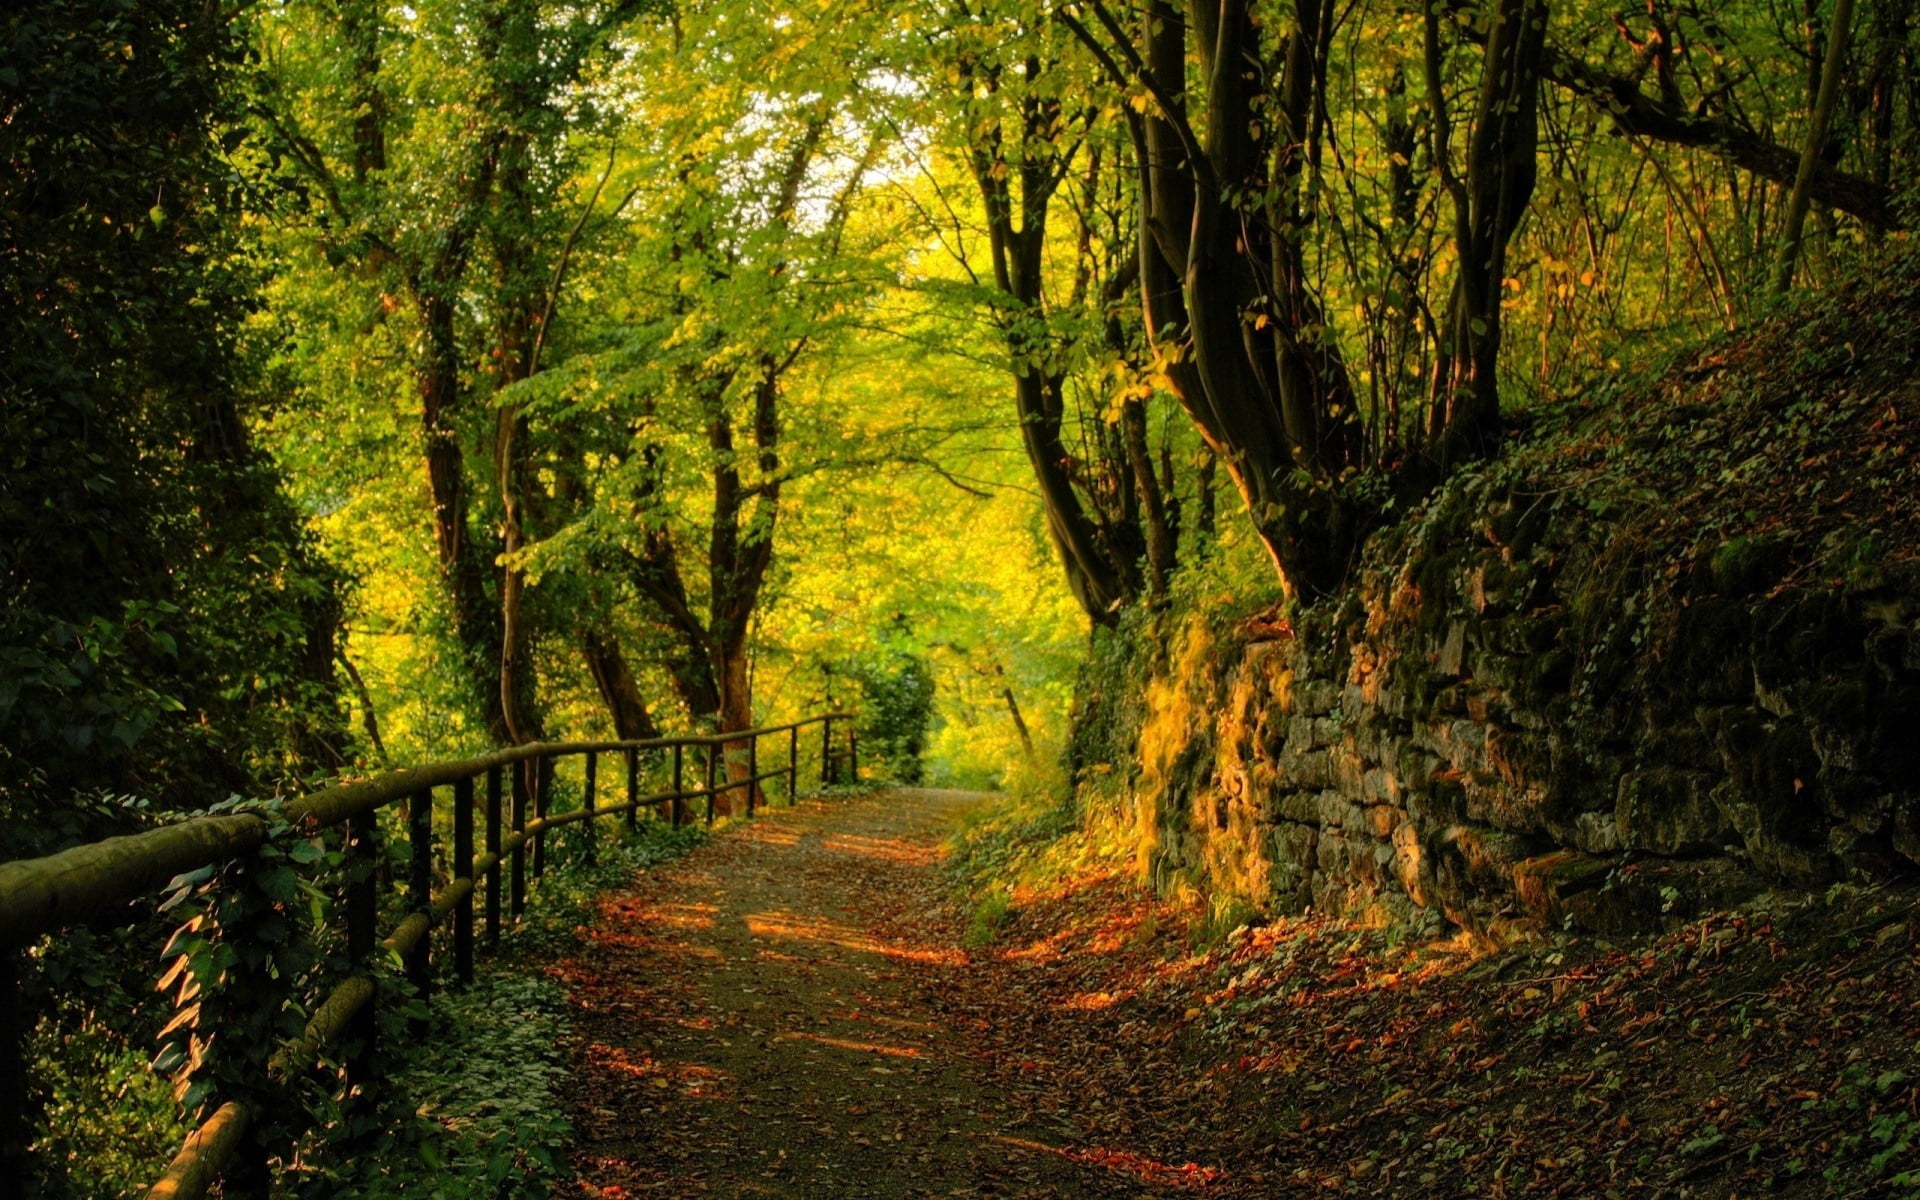 green leafed tree, wood, track, stones, trees, autumn, leaves